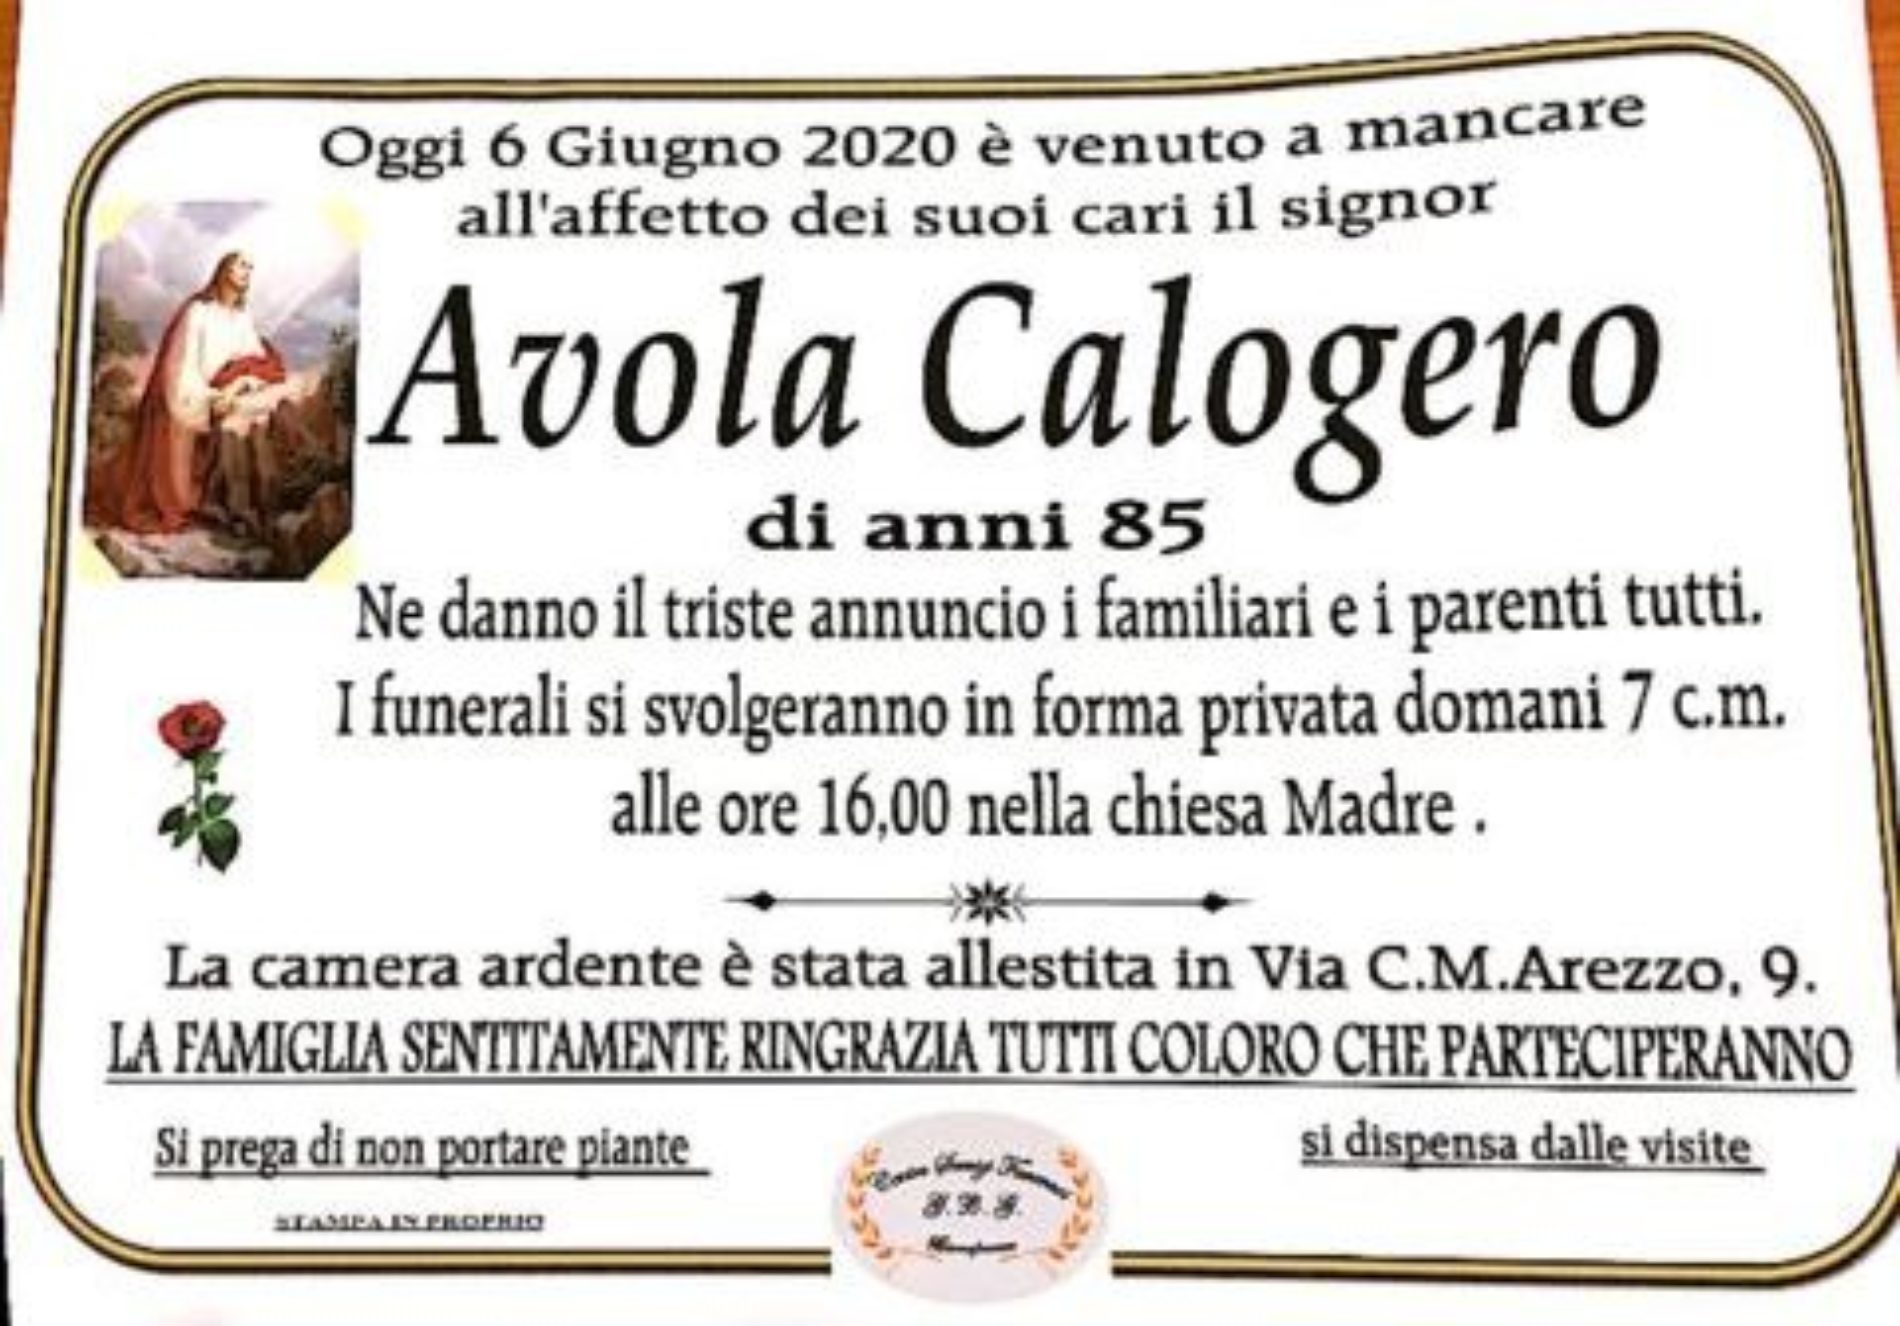 Annuncio Centro servizi funerari G.B.G. Avola Calogero 85